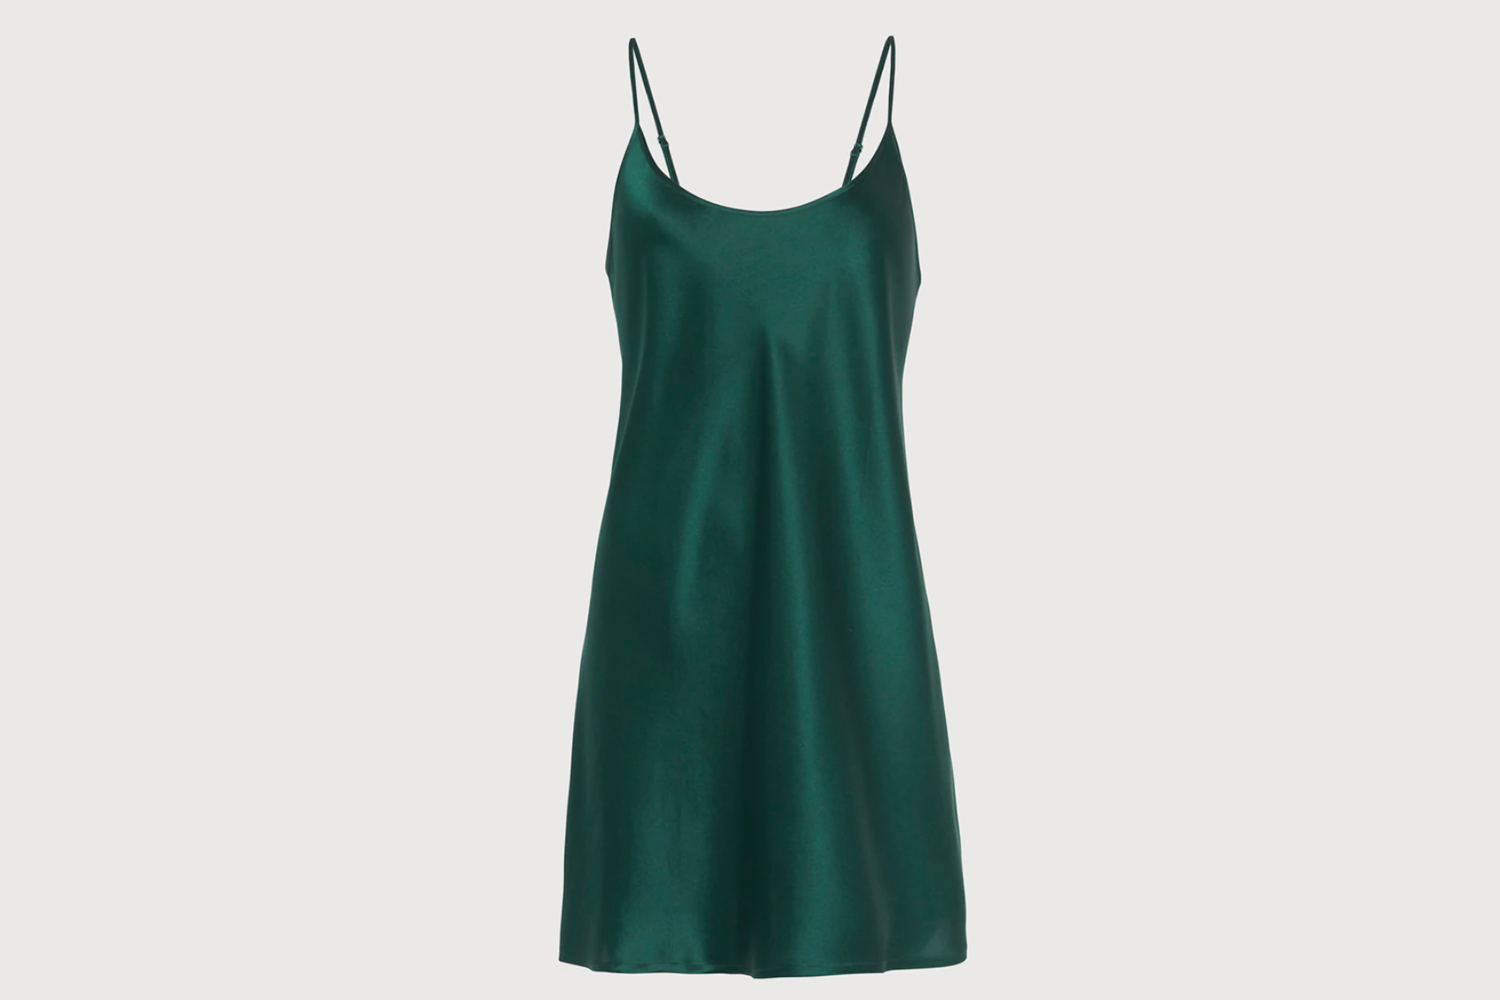 Silk slip dress in emerald